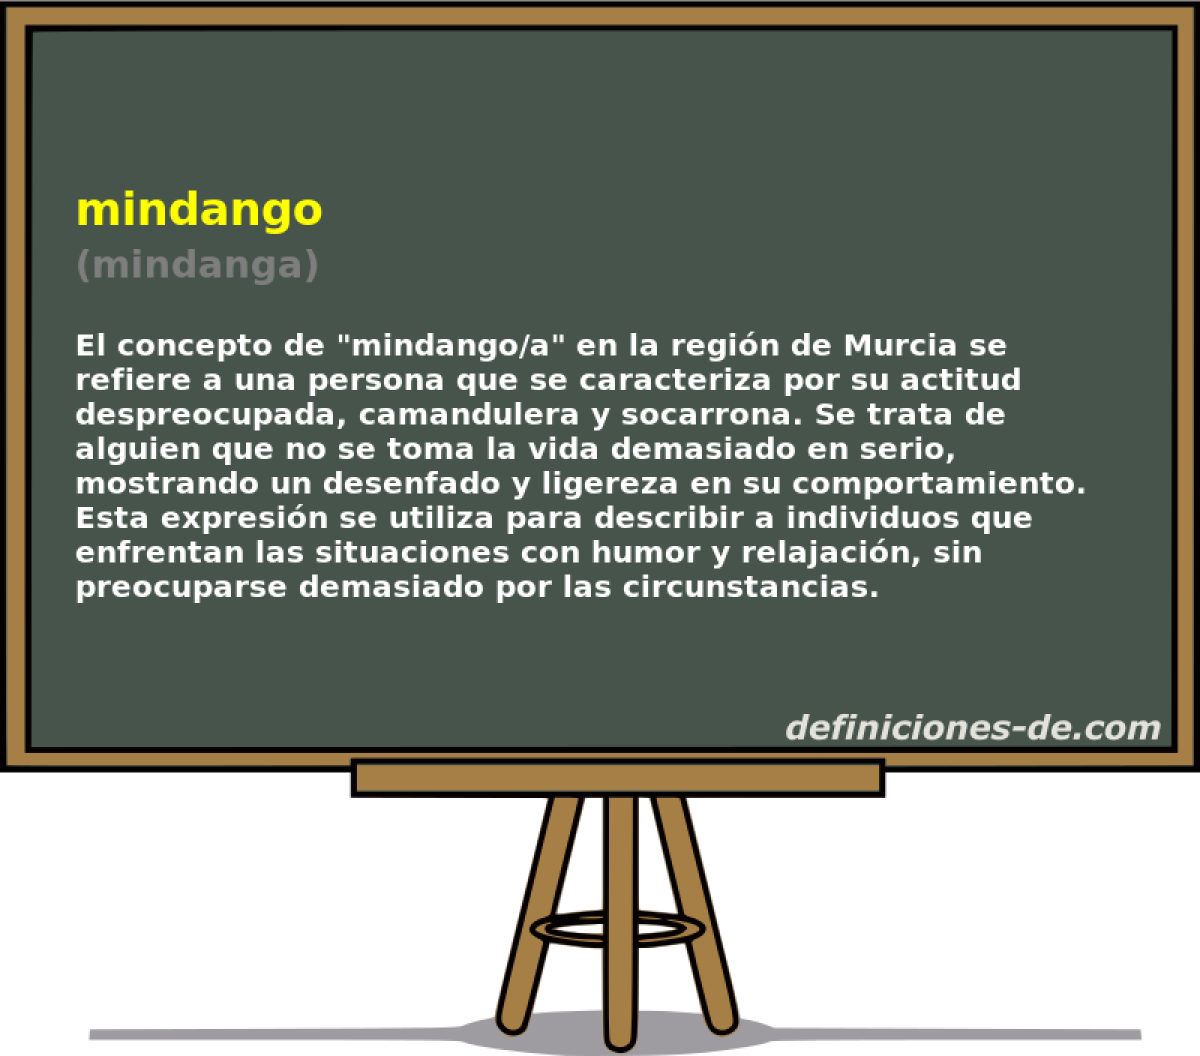 mindango (mindanga)